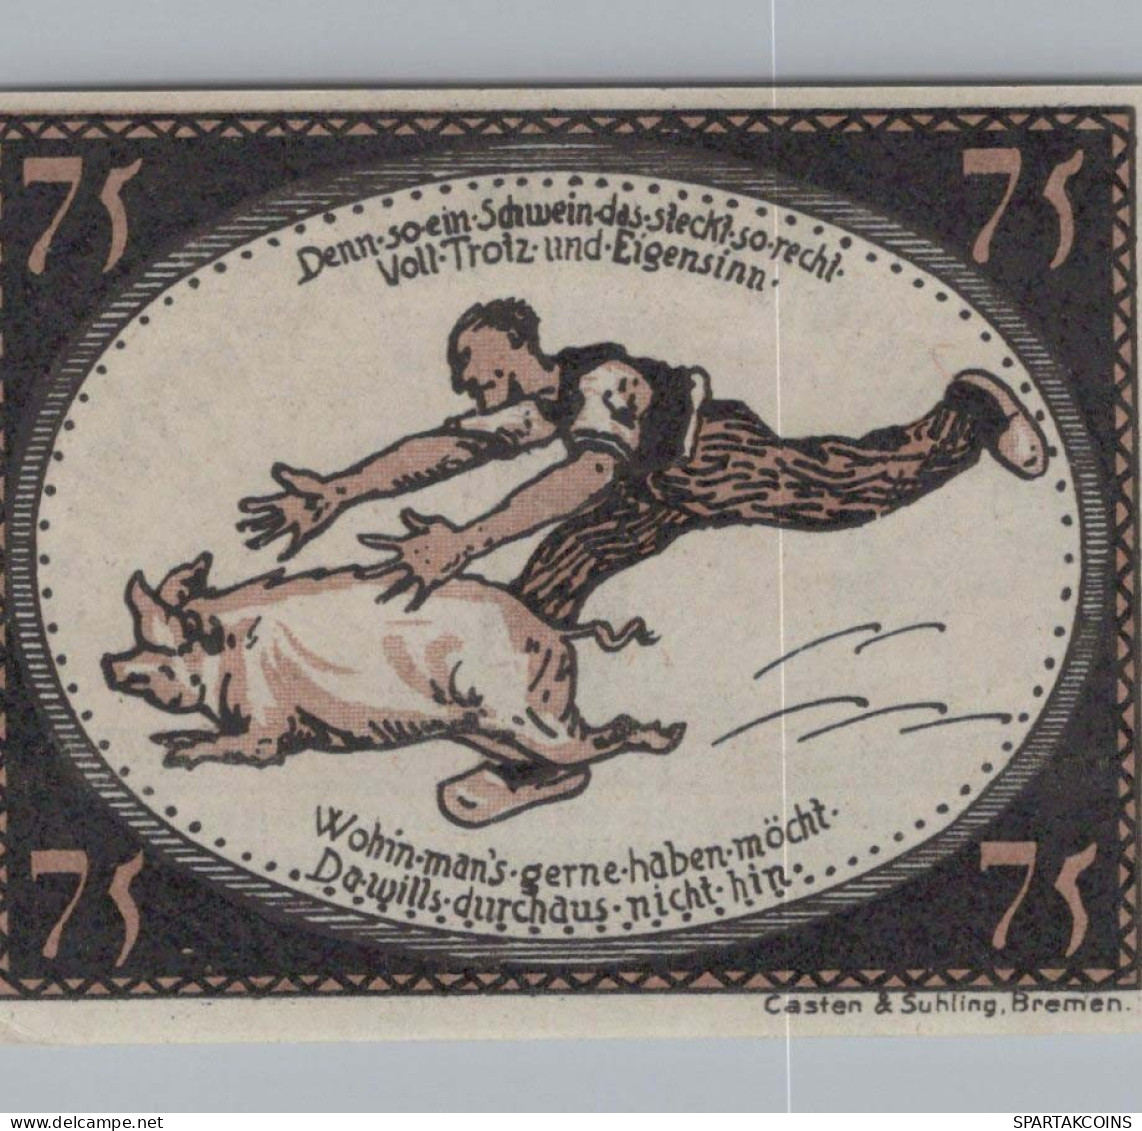 75 PFENNIG 1921 Stadt DIEPHOLZ Hanover UNC DEUTSCHLAND Notgeld Banknote #PA461 - [11] Emissions Locales